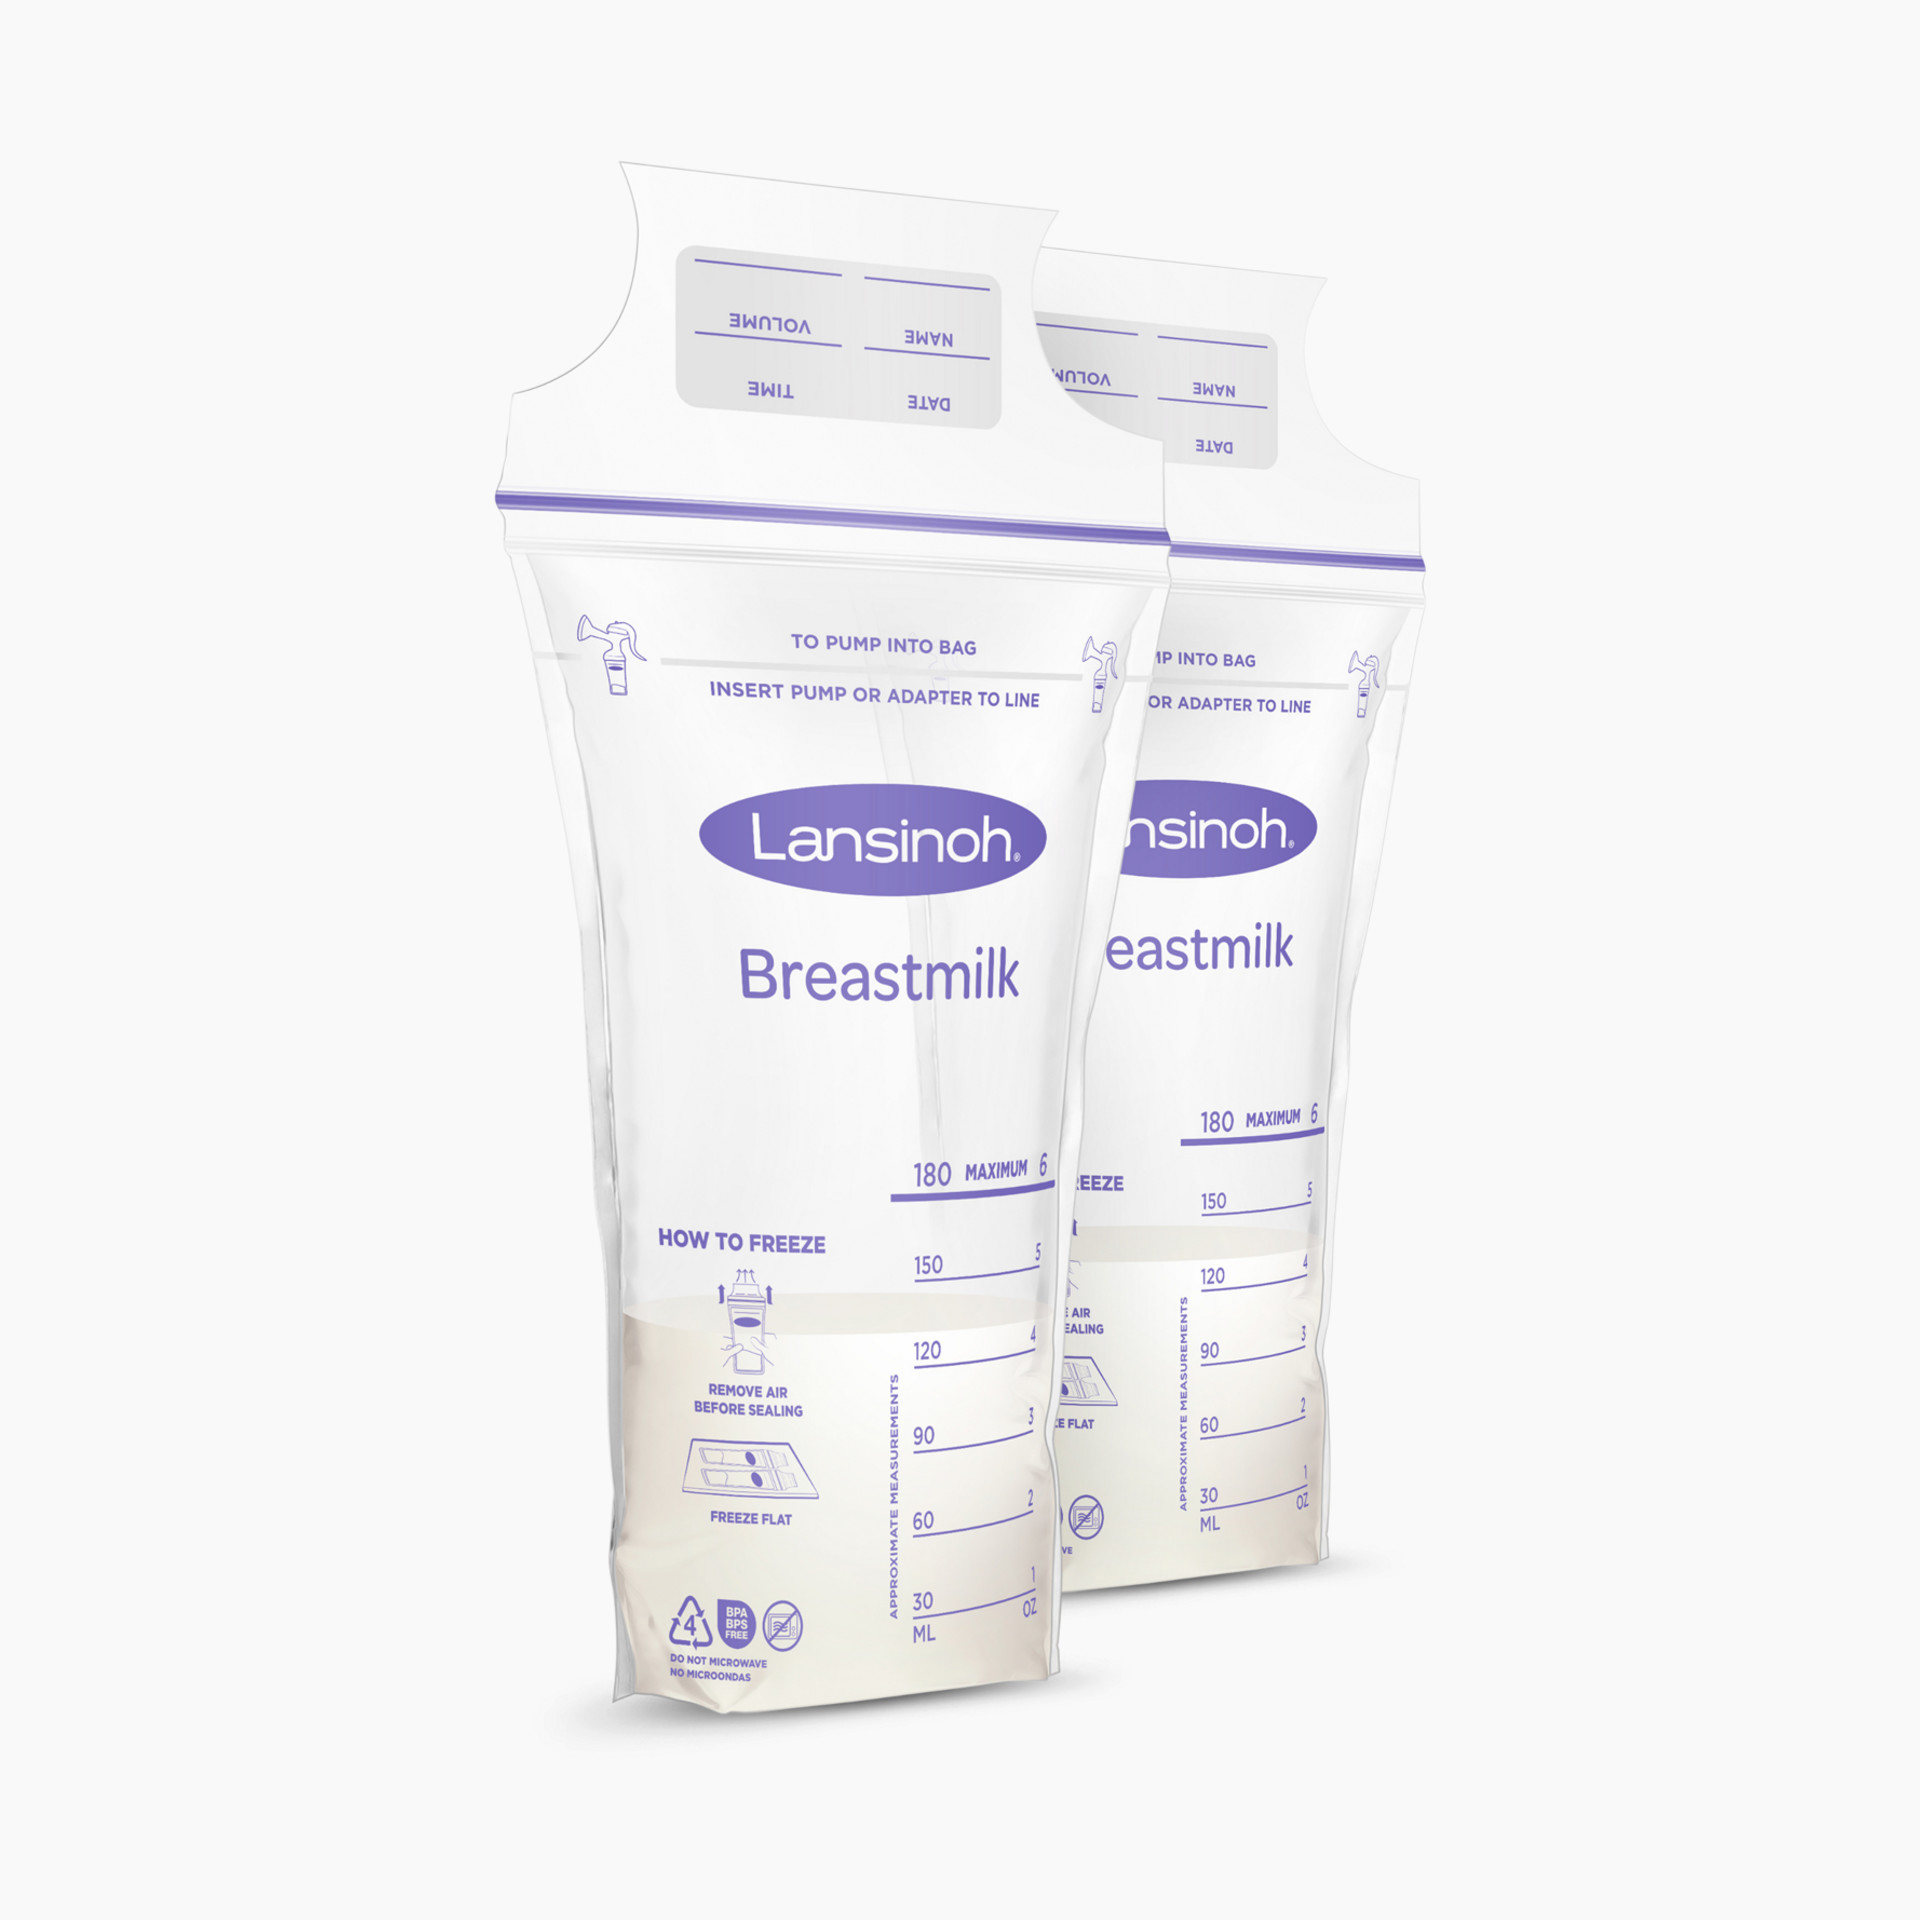 Lansinoh Breastmilk Storage Bags, 75 ct 